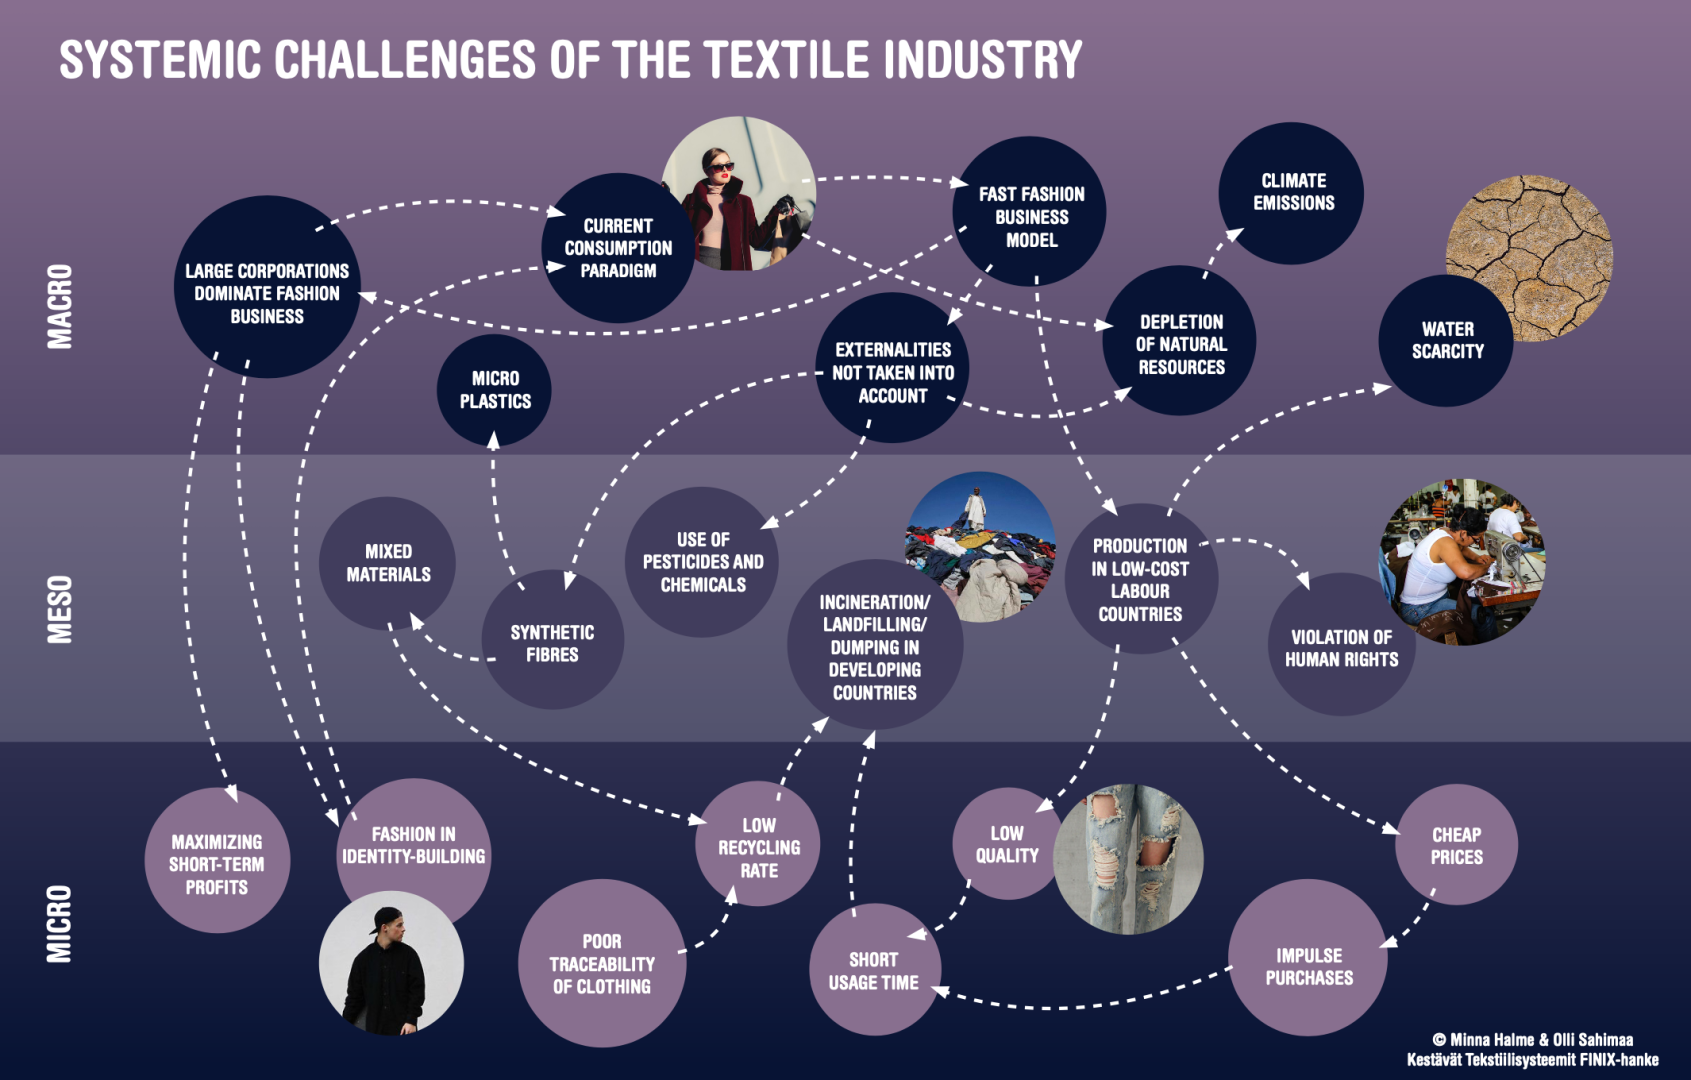 Kuvassa visualisoituna tekstiilialan systeemiset haasteet eri tasoilla